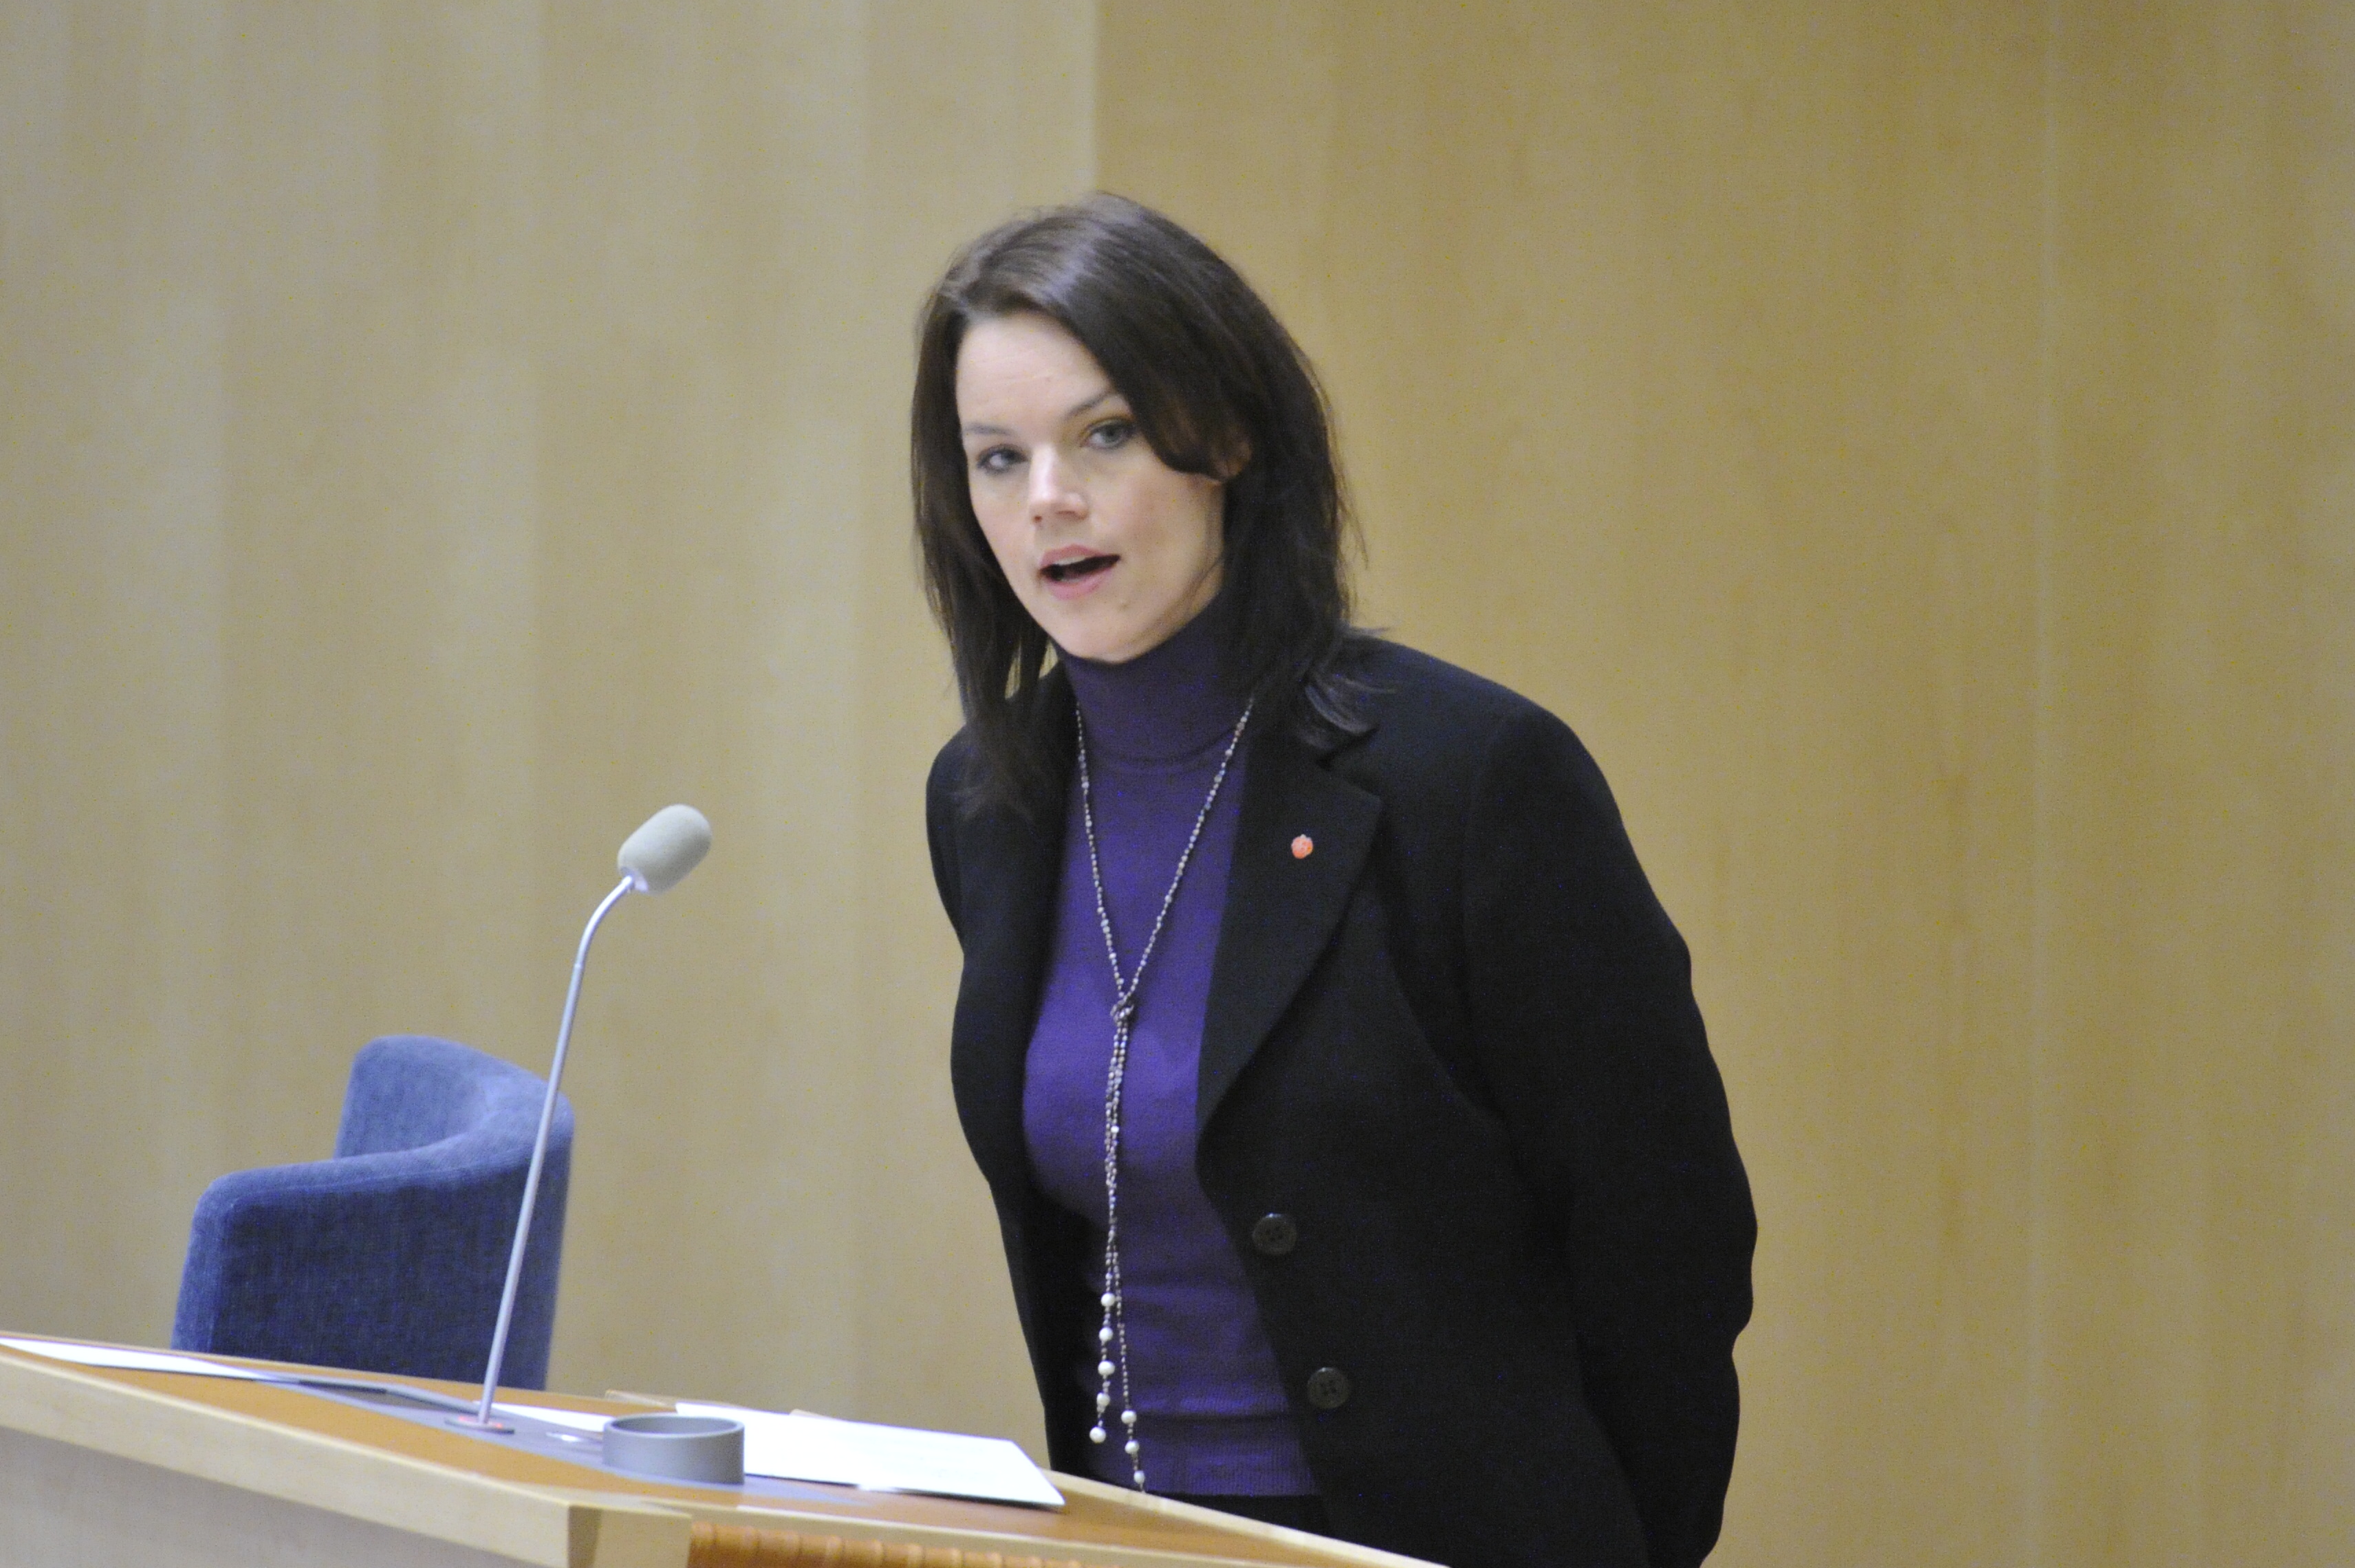 Veronica Palm, Sjukförsäkring, Regeringen, Utförsäkrad, Riksdagsvalet 2010, Försäkringskassan